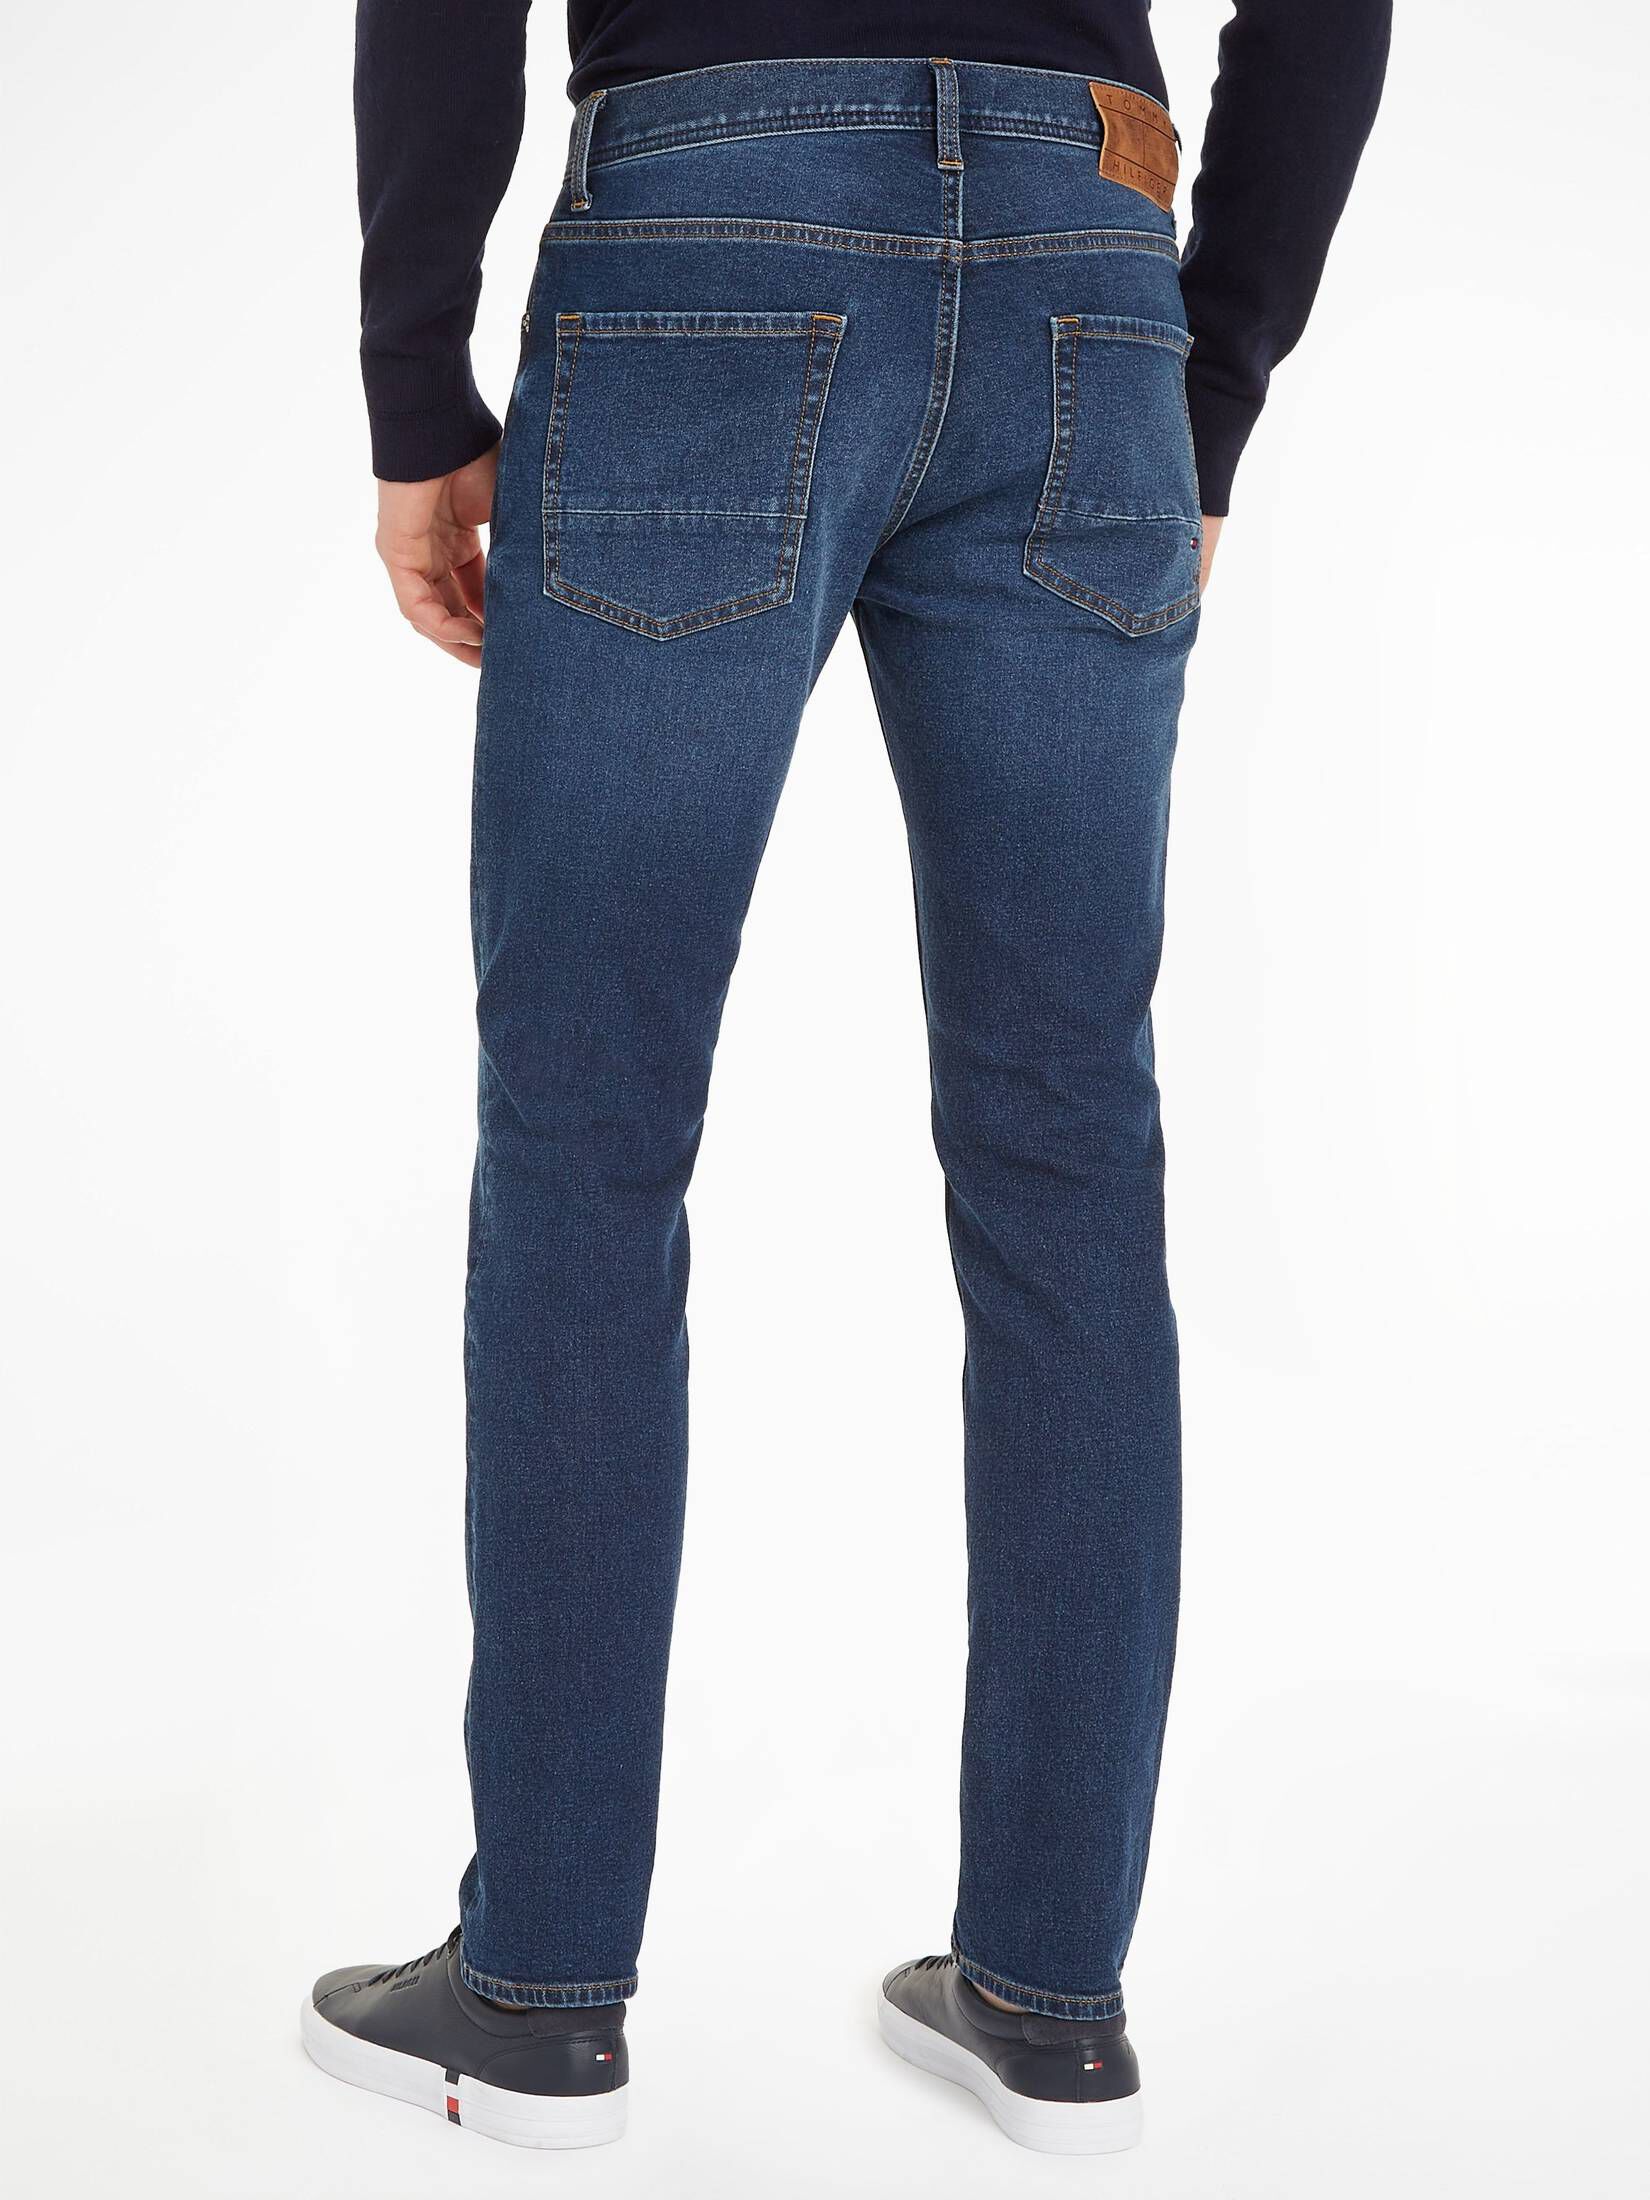 | Hilfiger Fit TH kaufen DENTON Herren STERNE engelhorn STR Straight Jeans Tommy